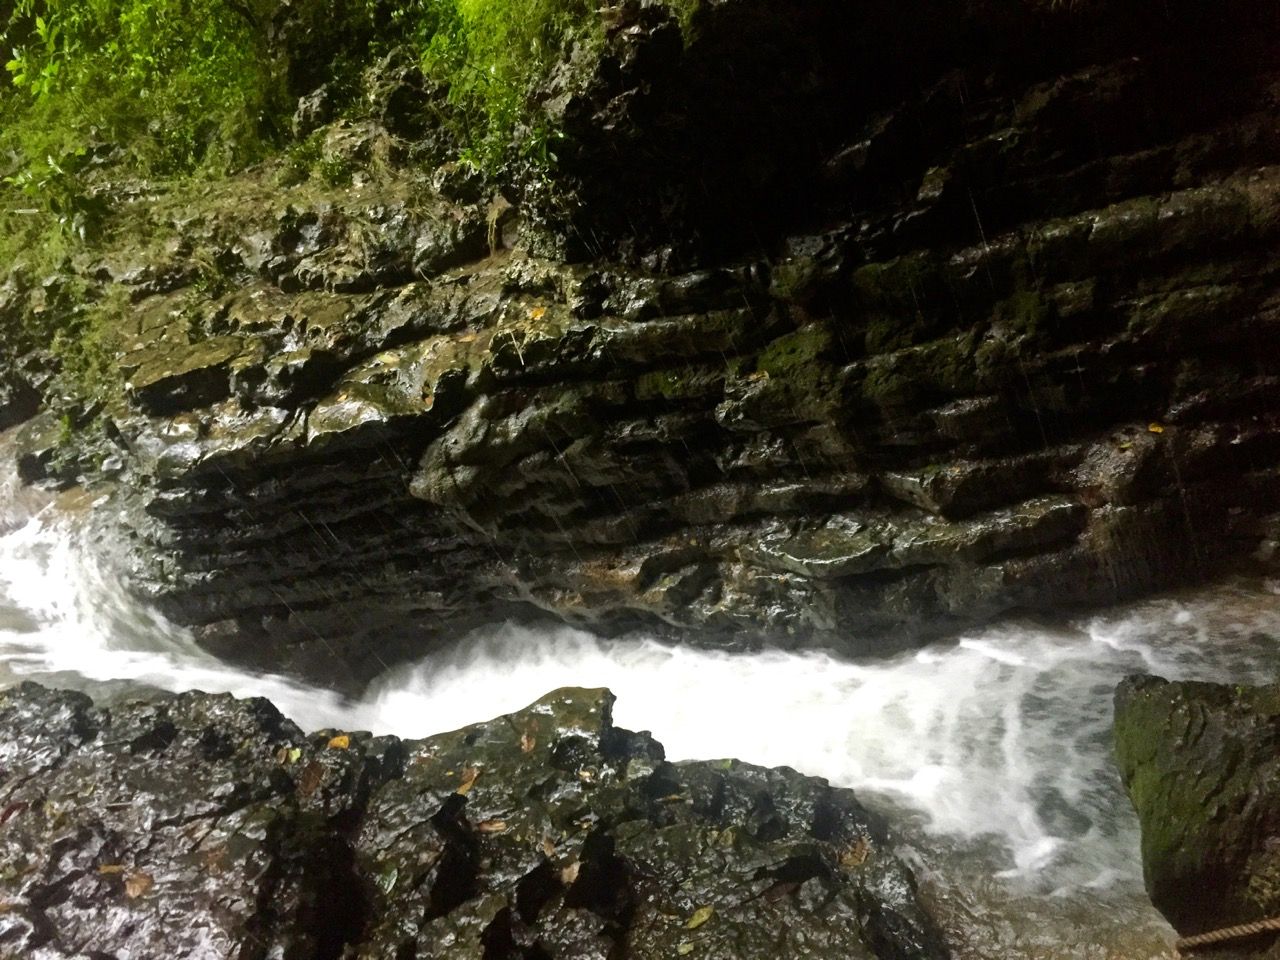 River rapids flowing in between high rock walls.